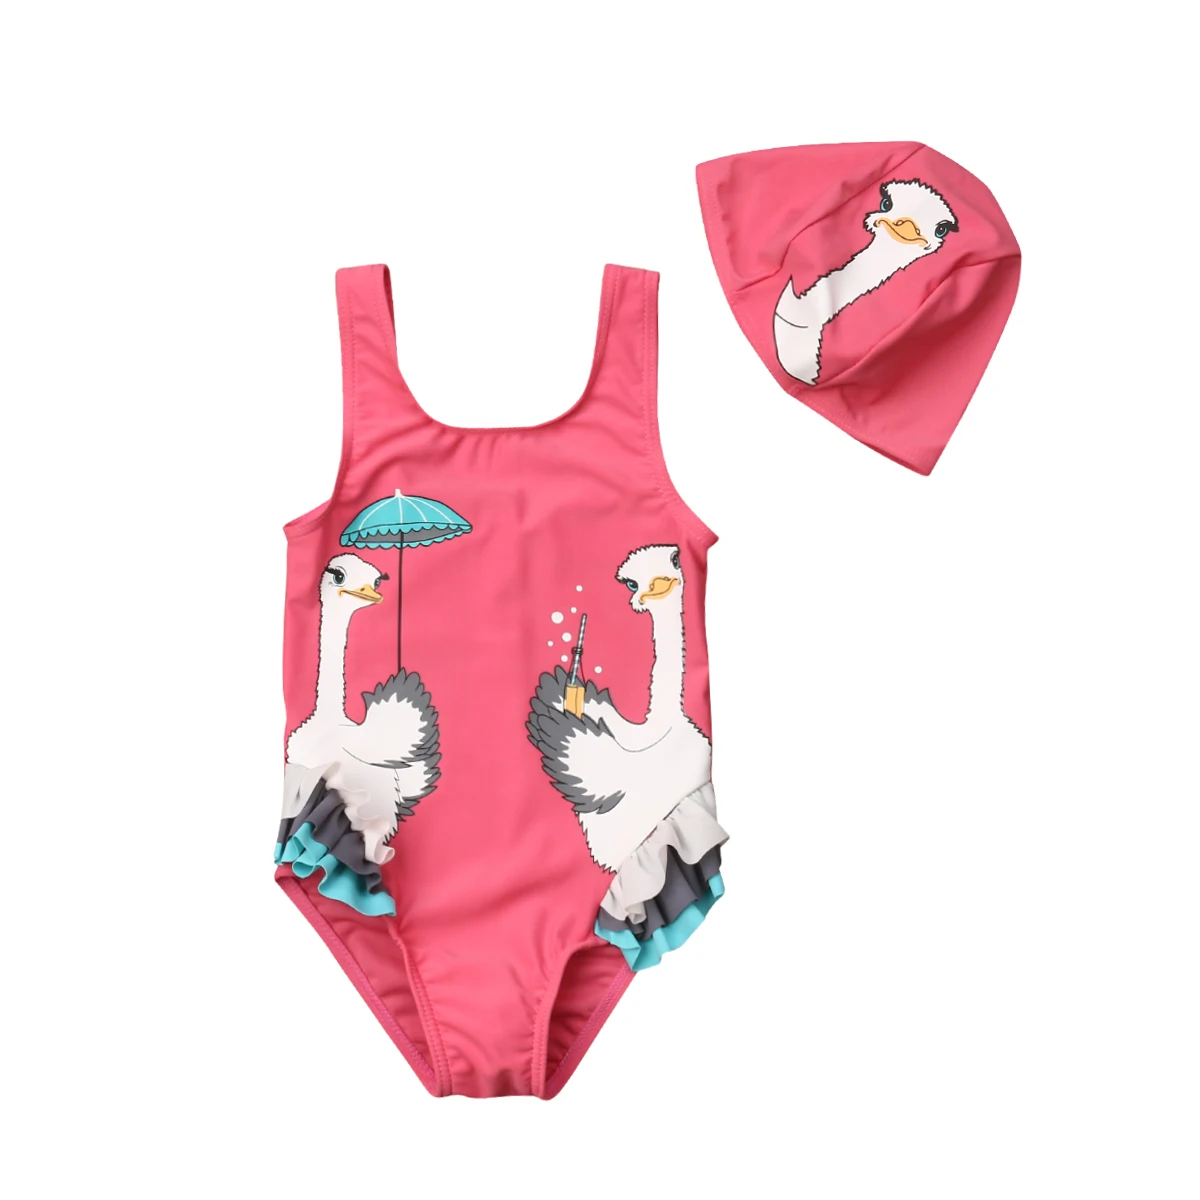 Новинка, юбка для маленьких девочек с рисунком Купальник "Лебедь" Детские Лебеди принт купальники ребенок бикини купальные костюмы для плавания шляпа костюмы ванный комплект